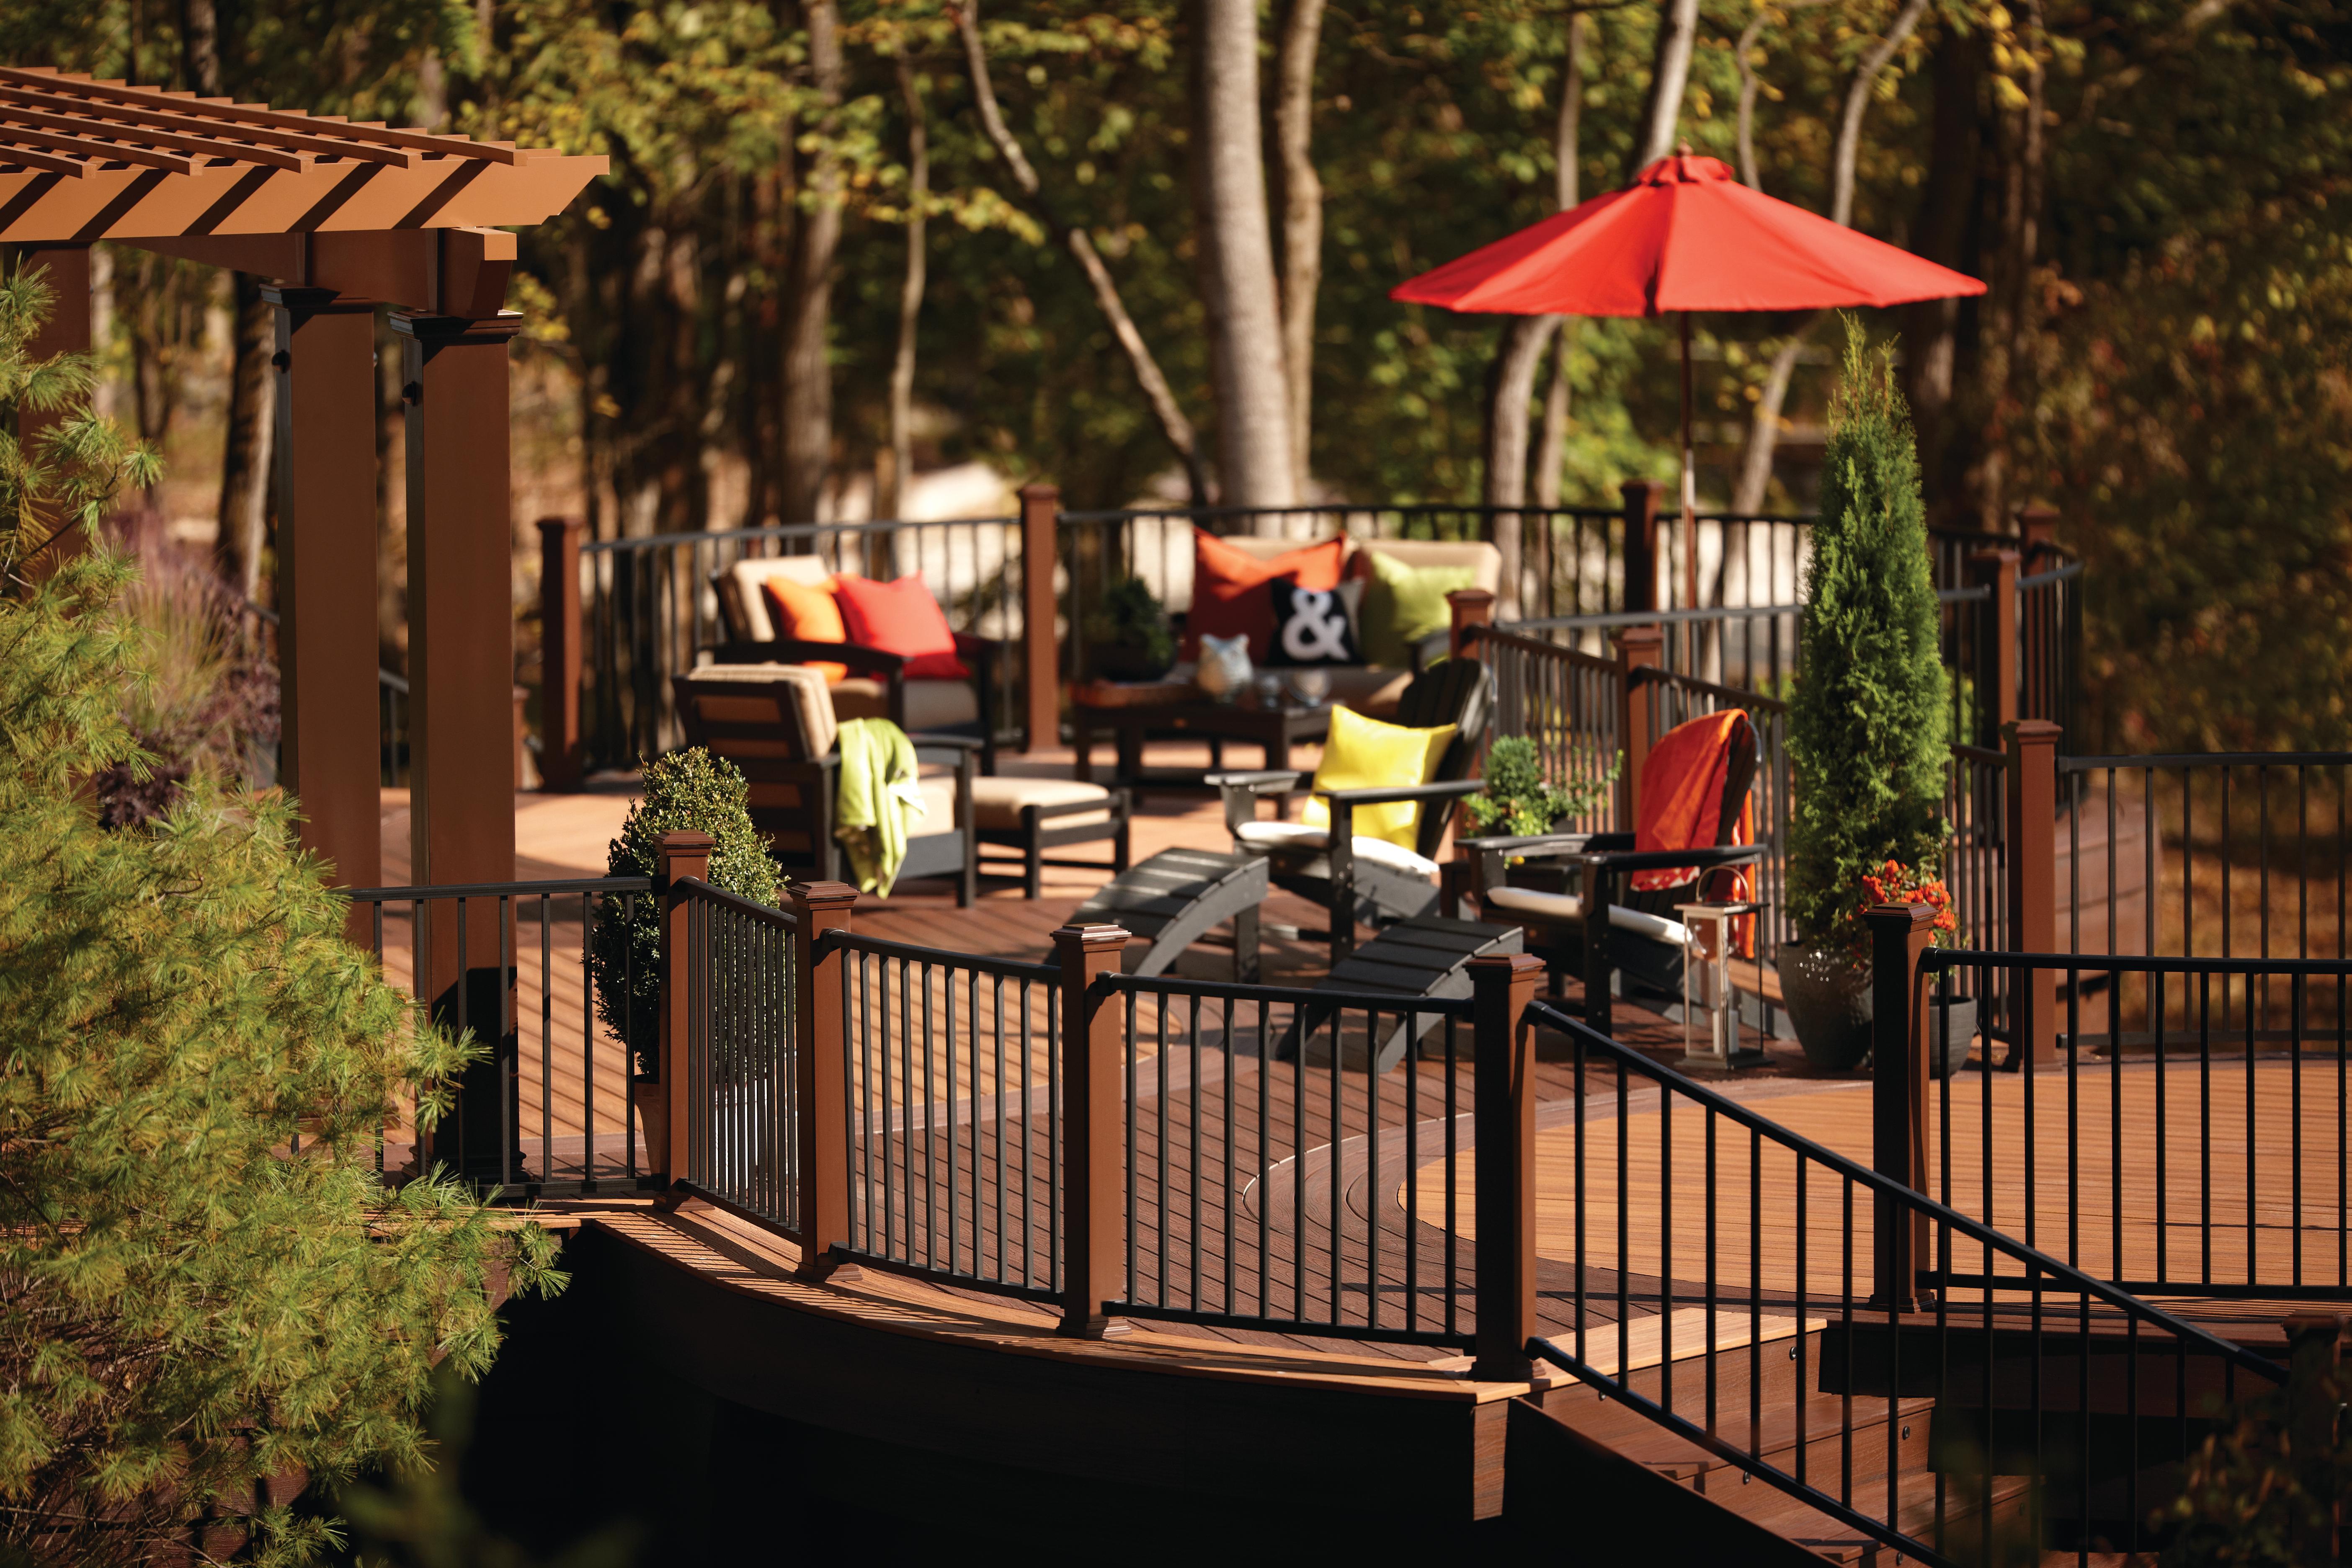 backyard deck ideas with a portable umbrella over an outdoor dining table